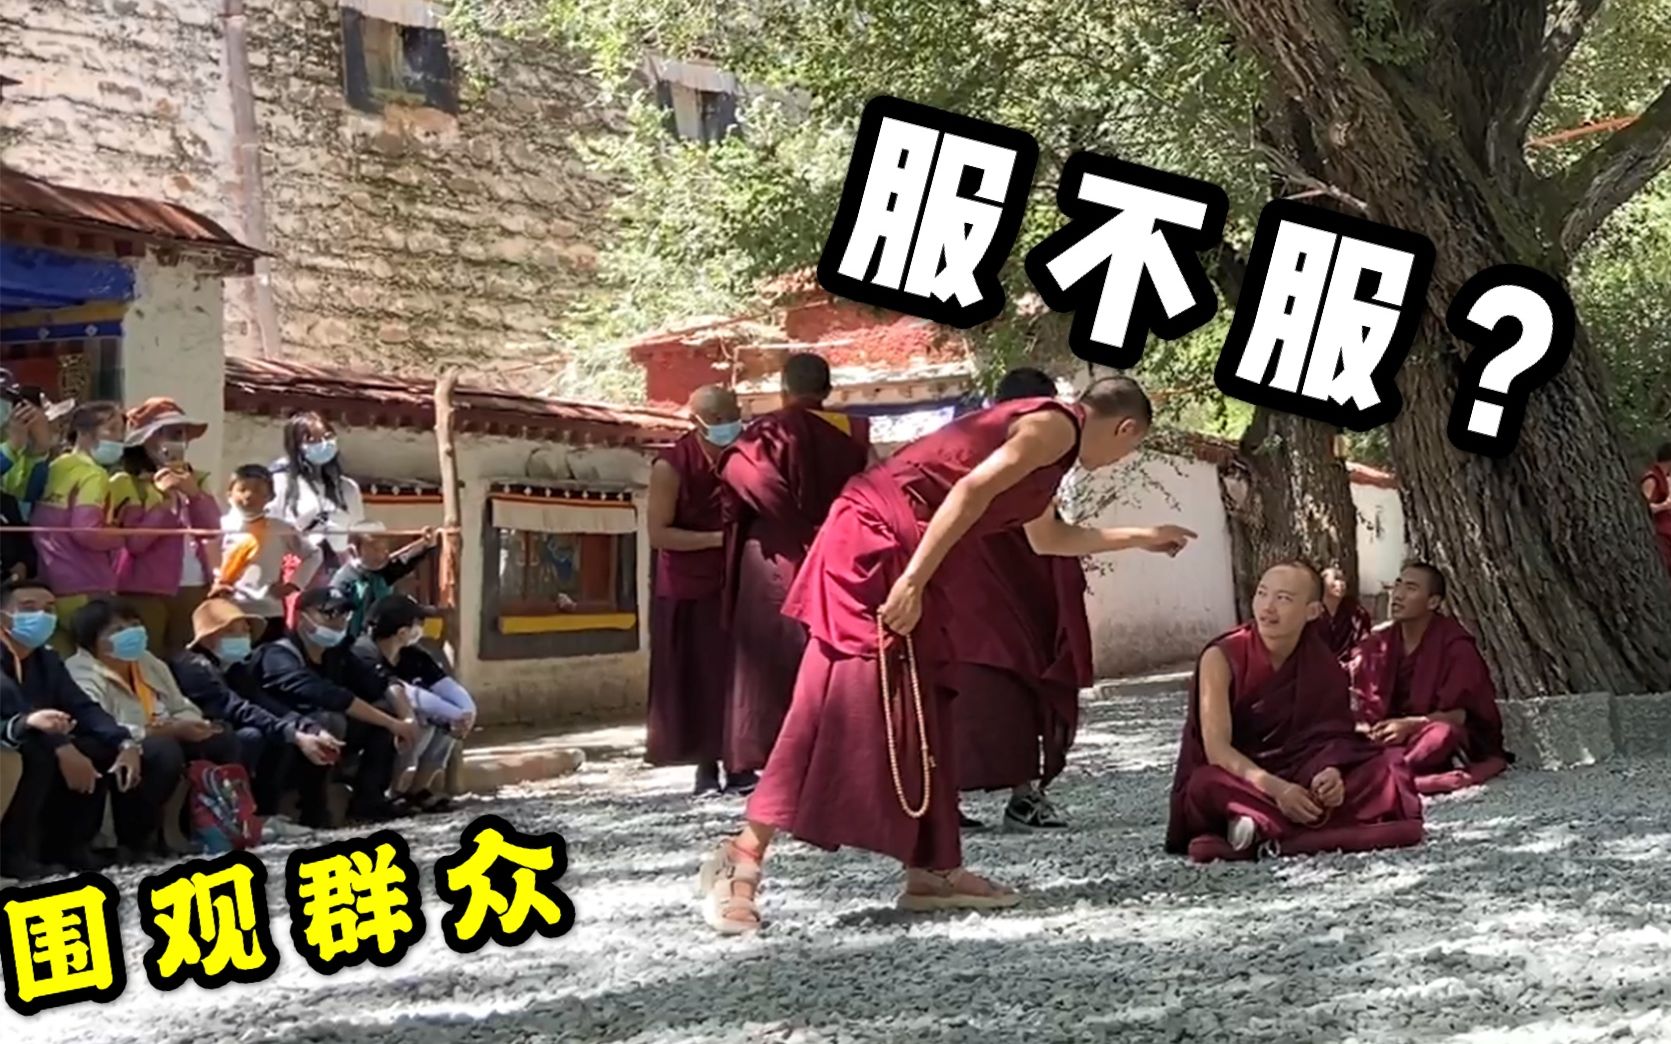 西藏围观僧人“吵架”抓拍色拉寺辩经的百态，言辞激烈手舞足蹈